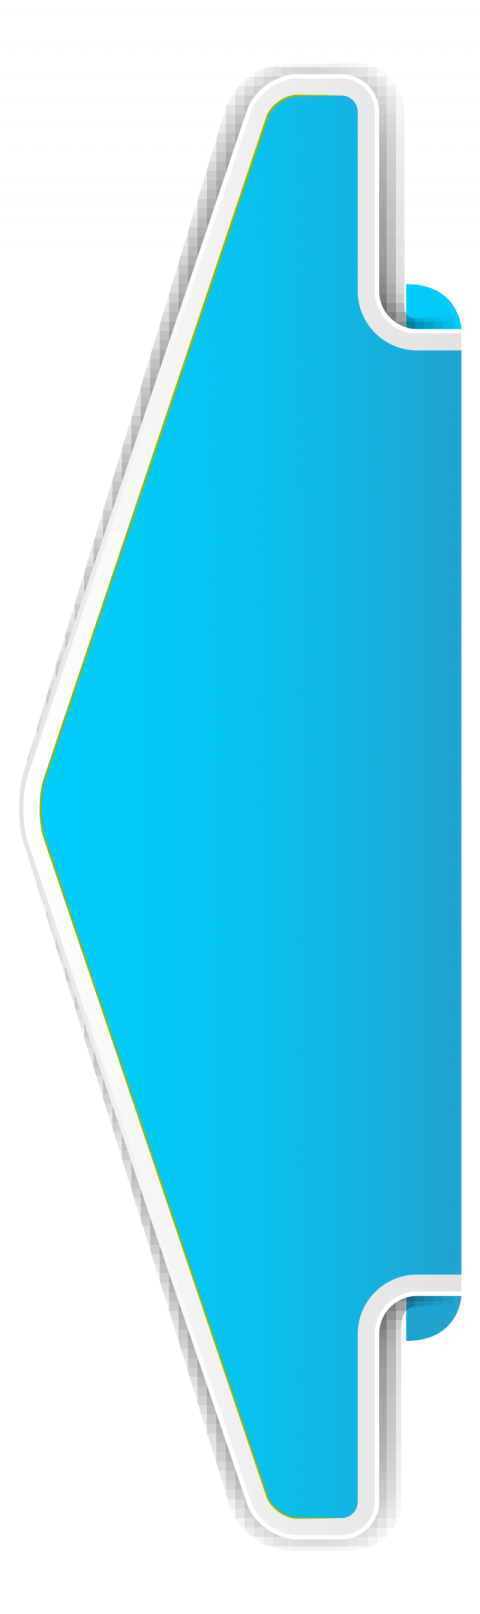 Arrow banner design vector blue colour